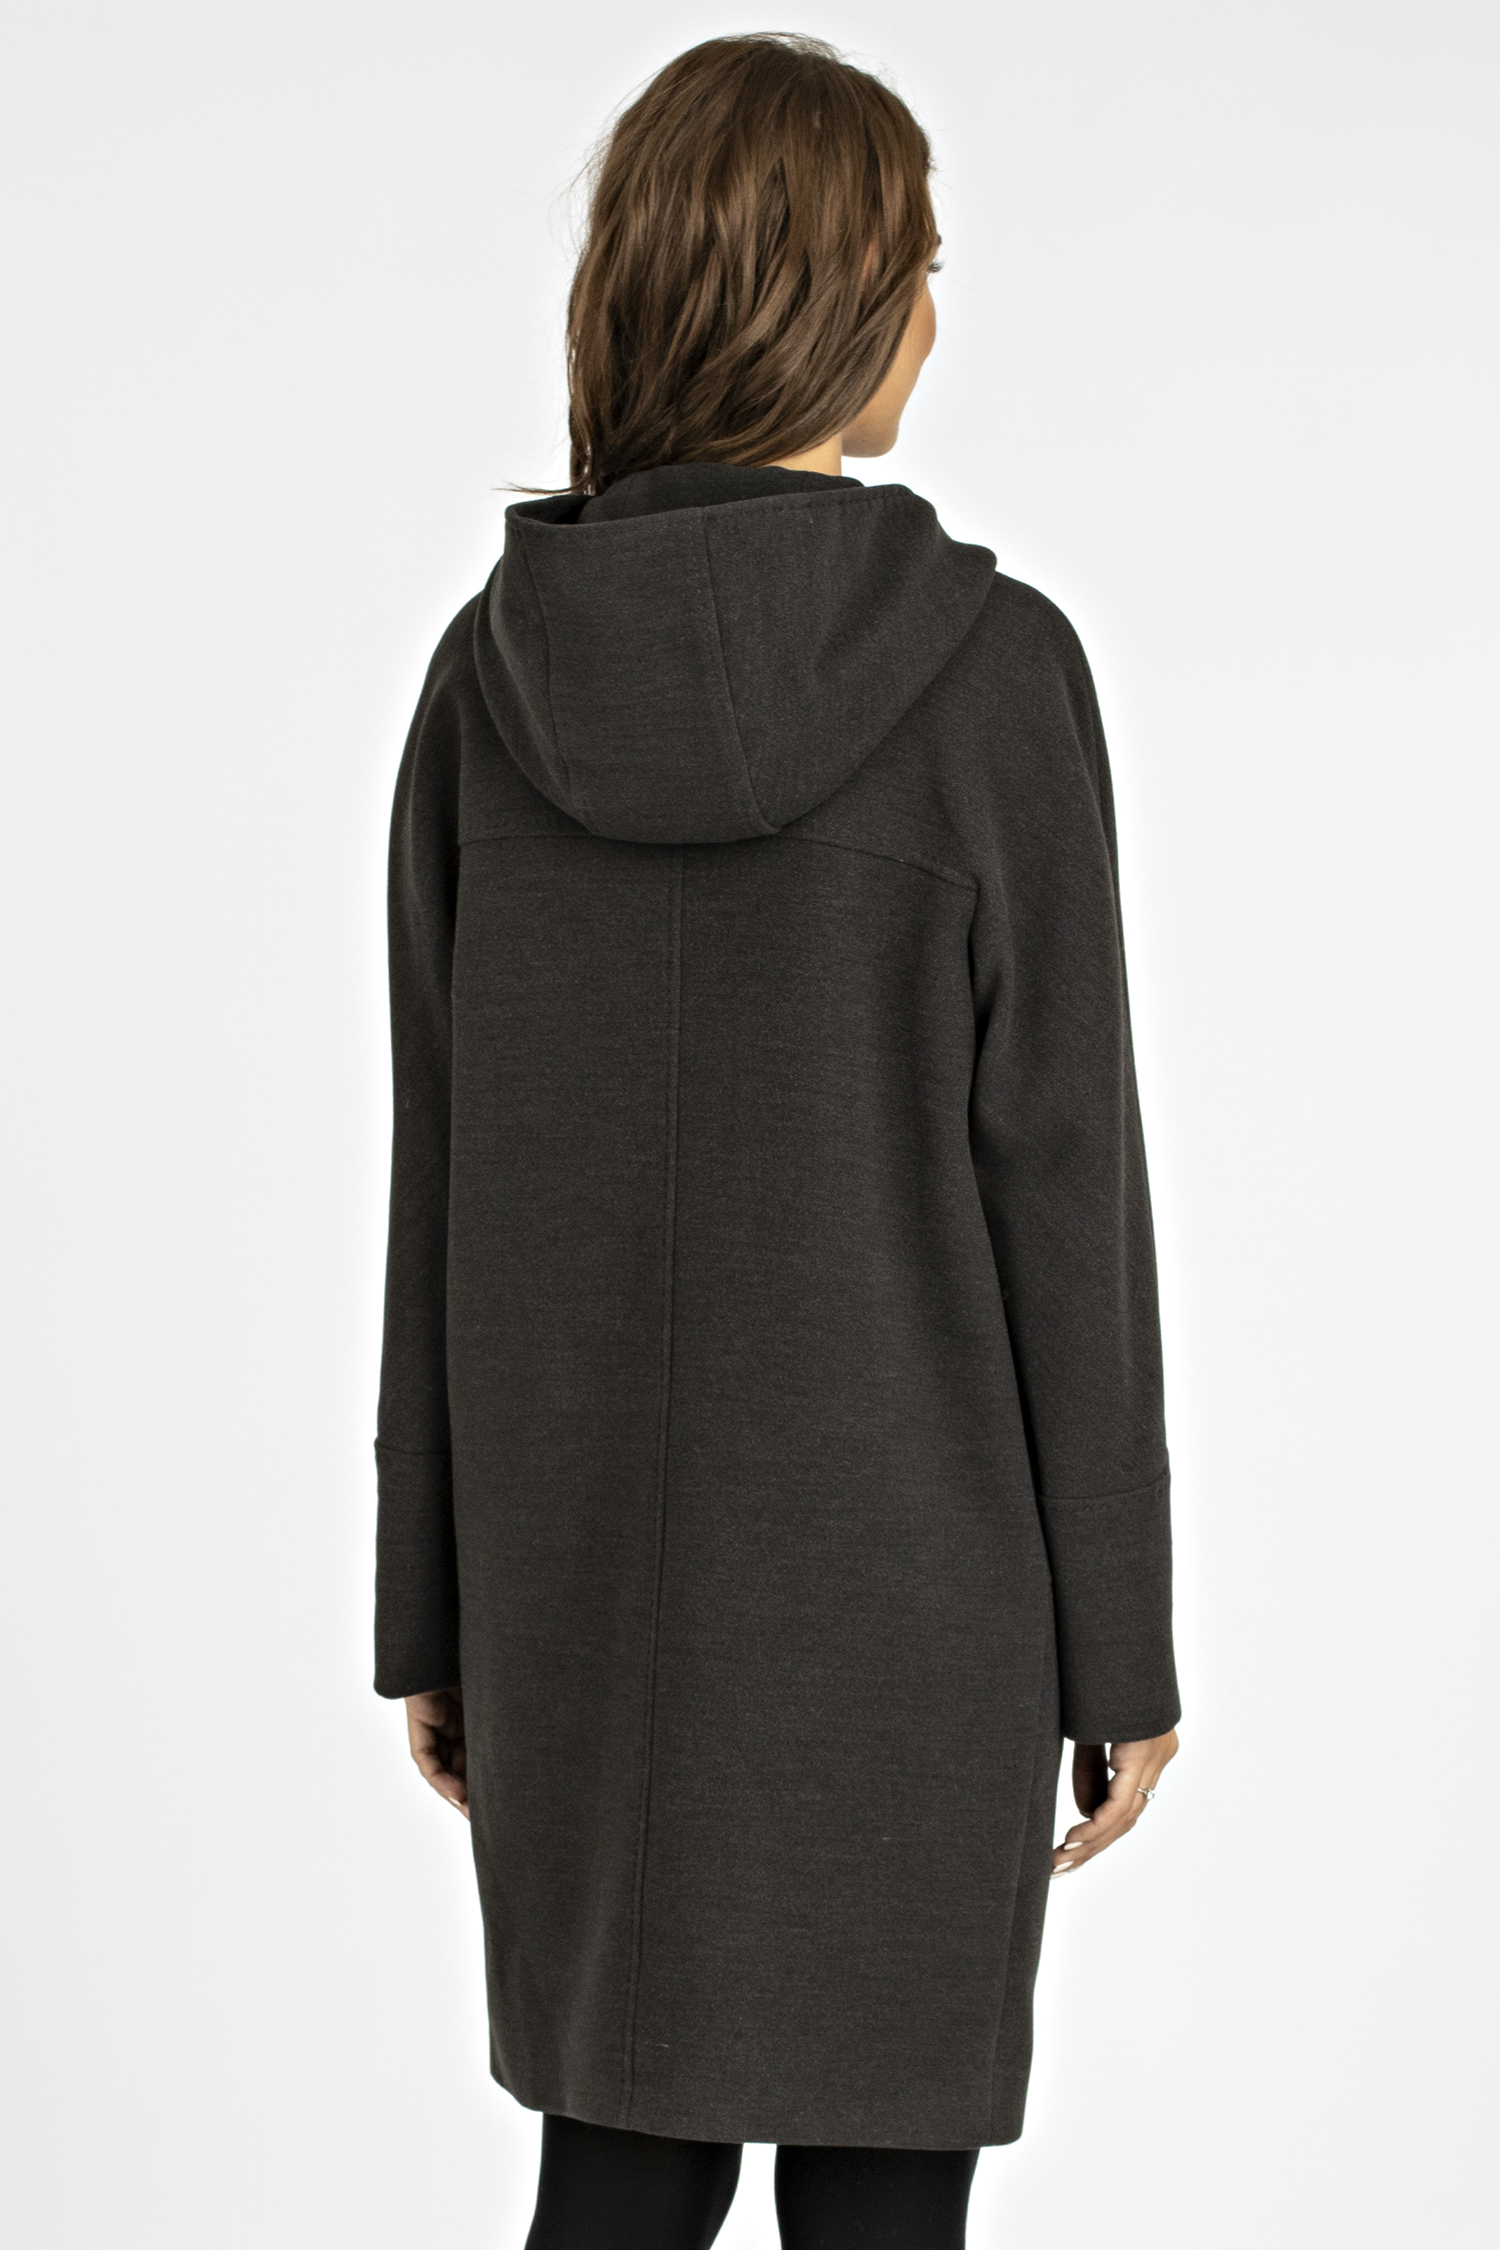 Женское пальто из текстиля с капюшоном, без отделки